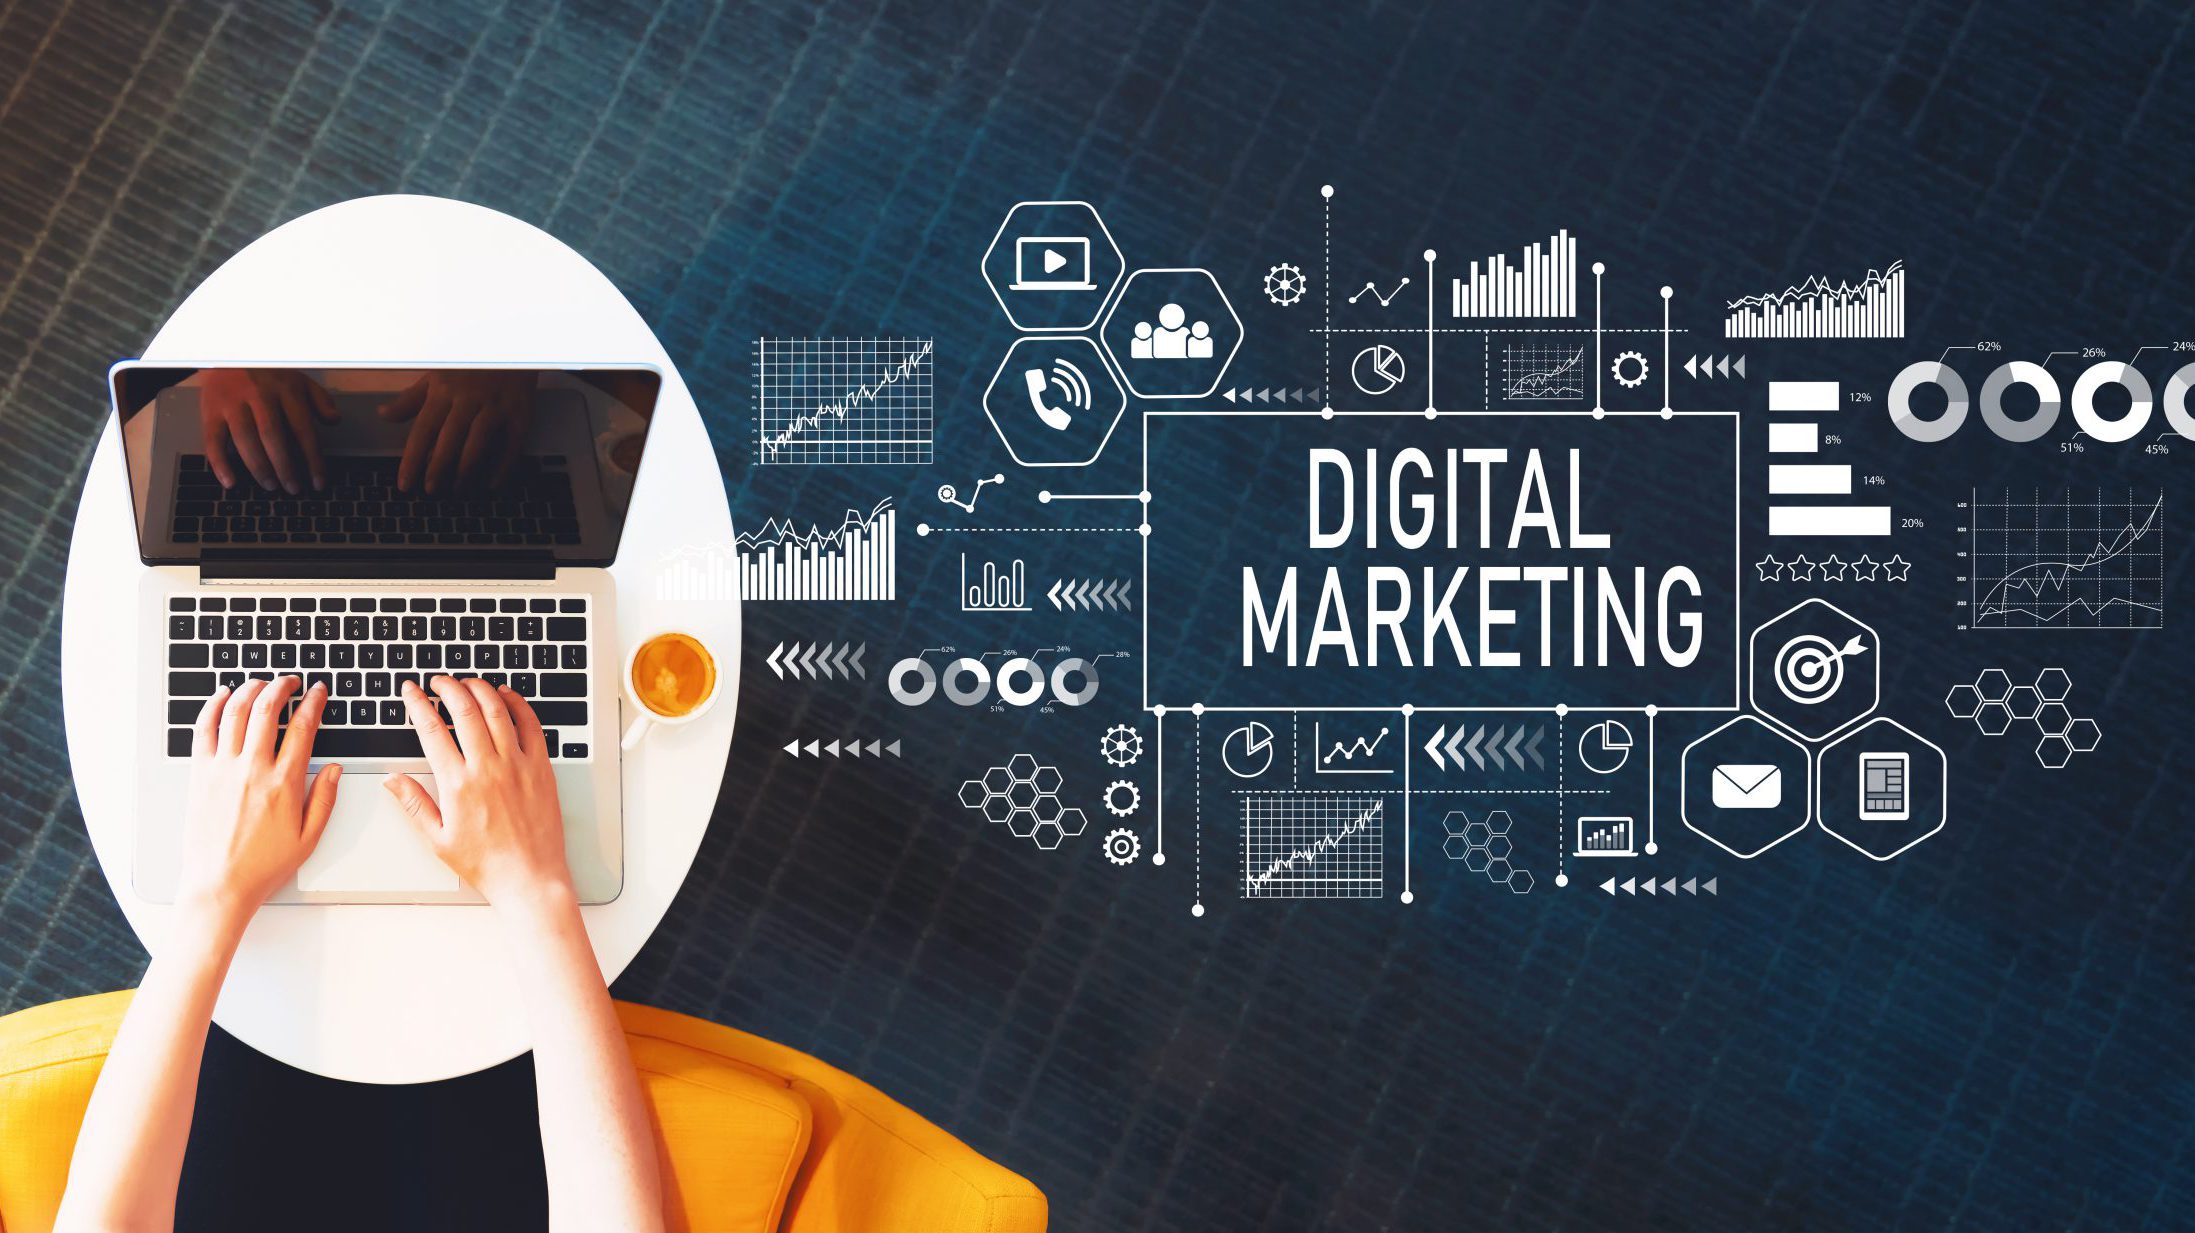 Digital Marketing đòi hỏi phải cập nhật kiến thức liên tục